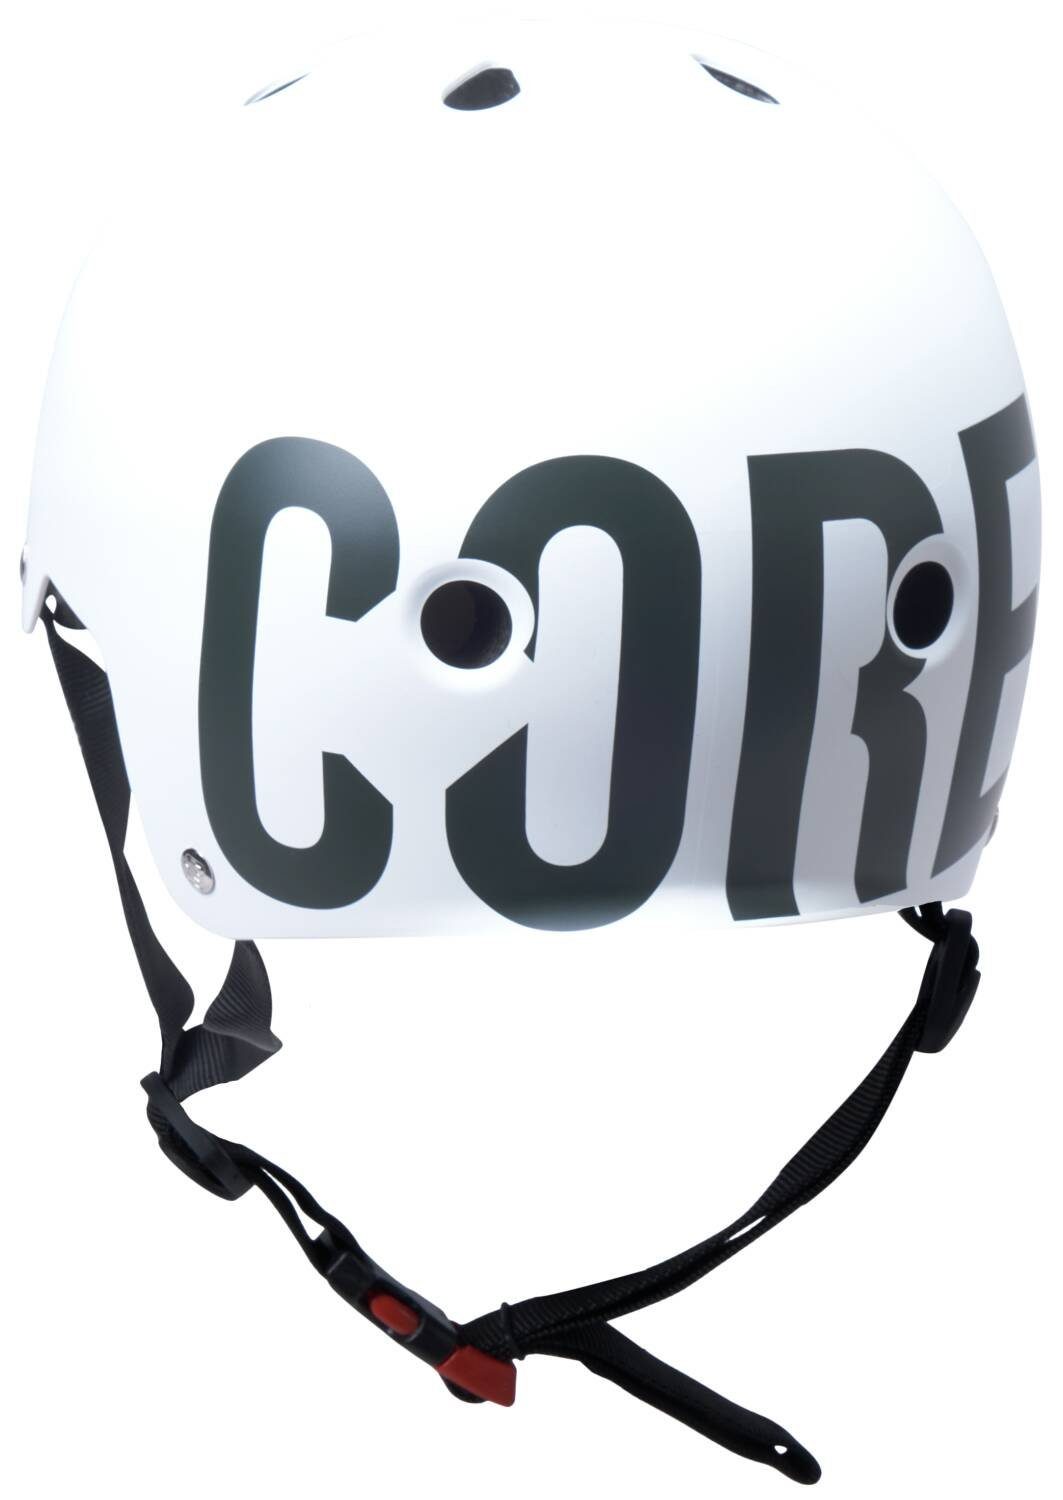 Street Core Helm Sports Core Action Skate Dirt Weiß/Logo Stunt-Scooter Protektoren-Set Schwarz